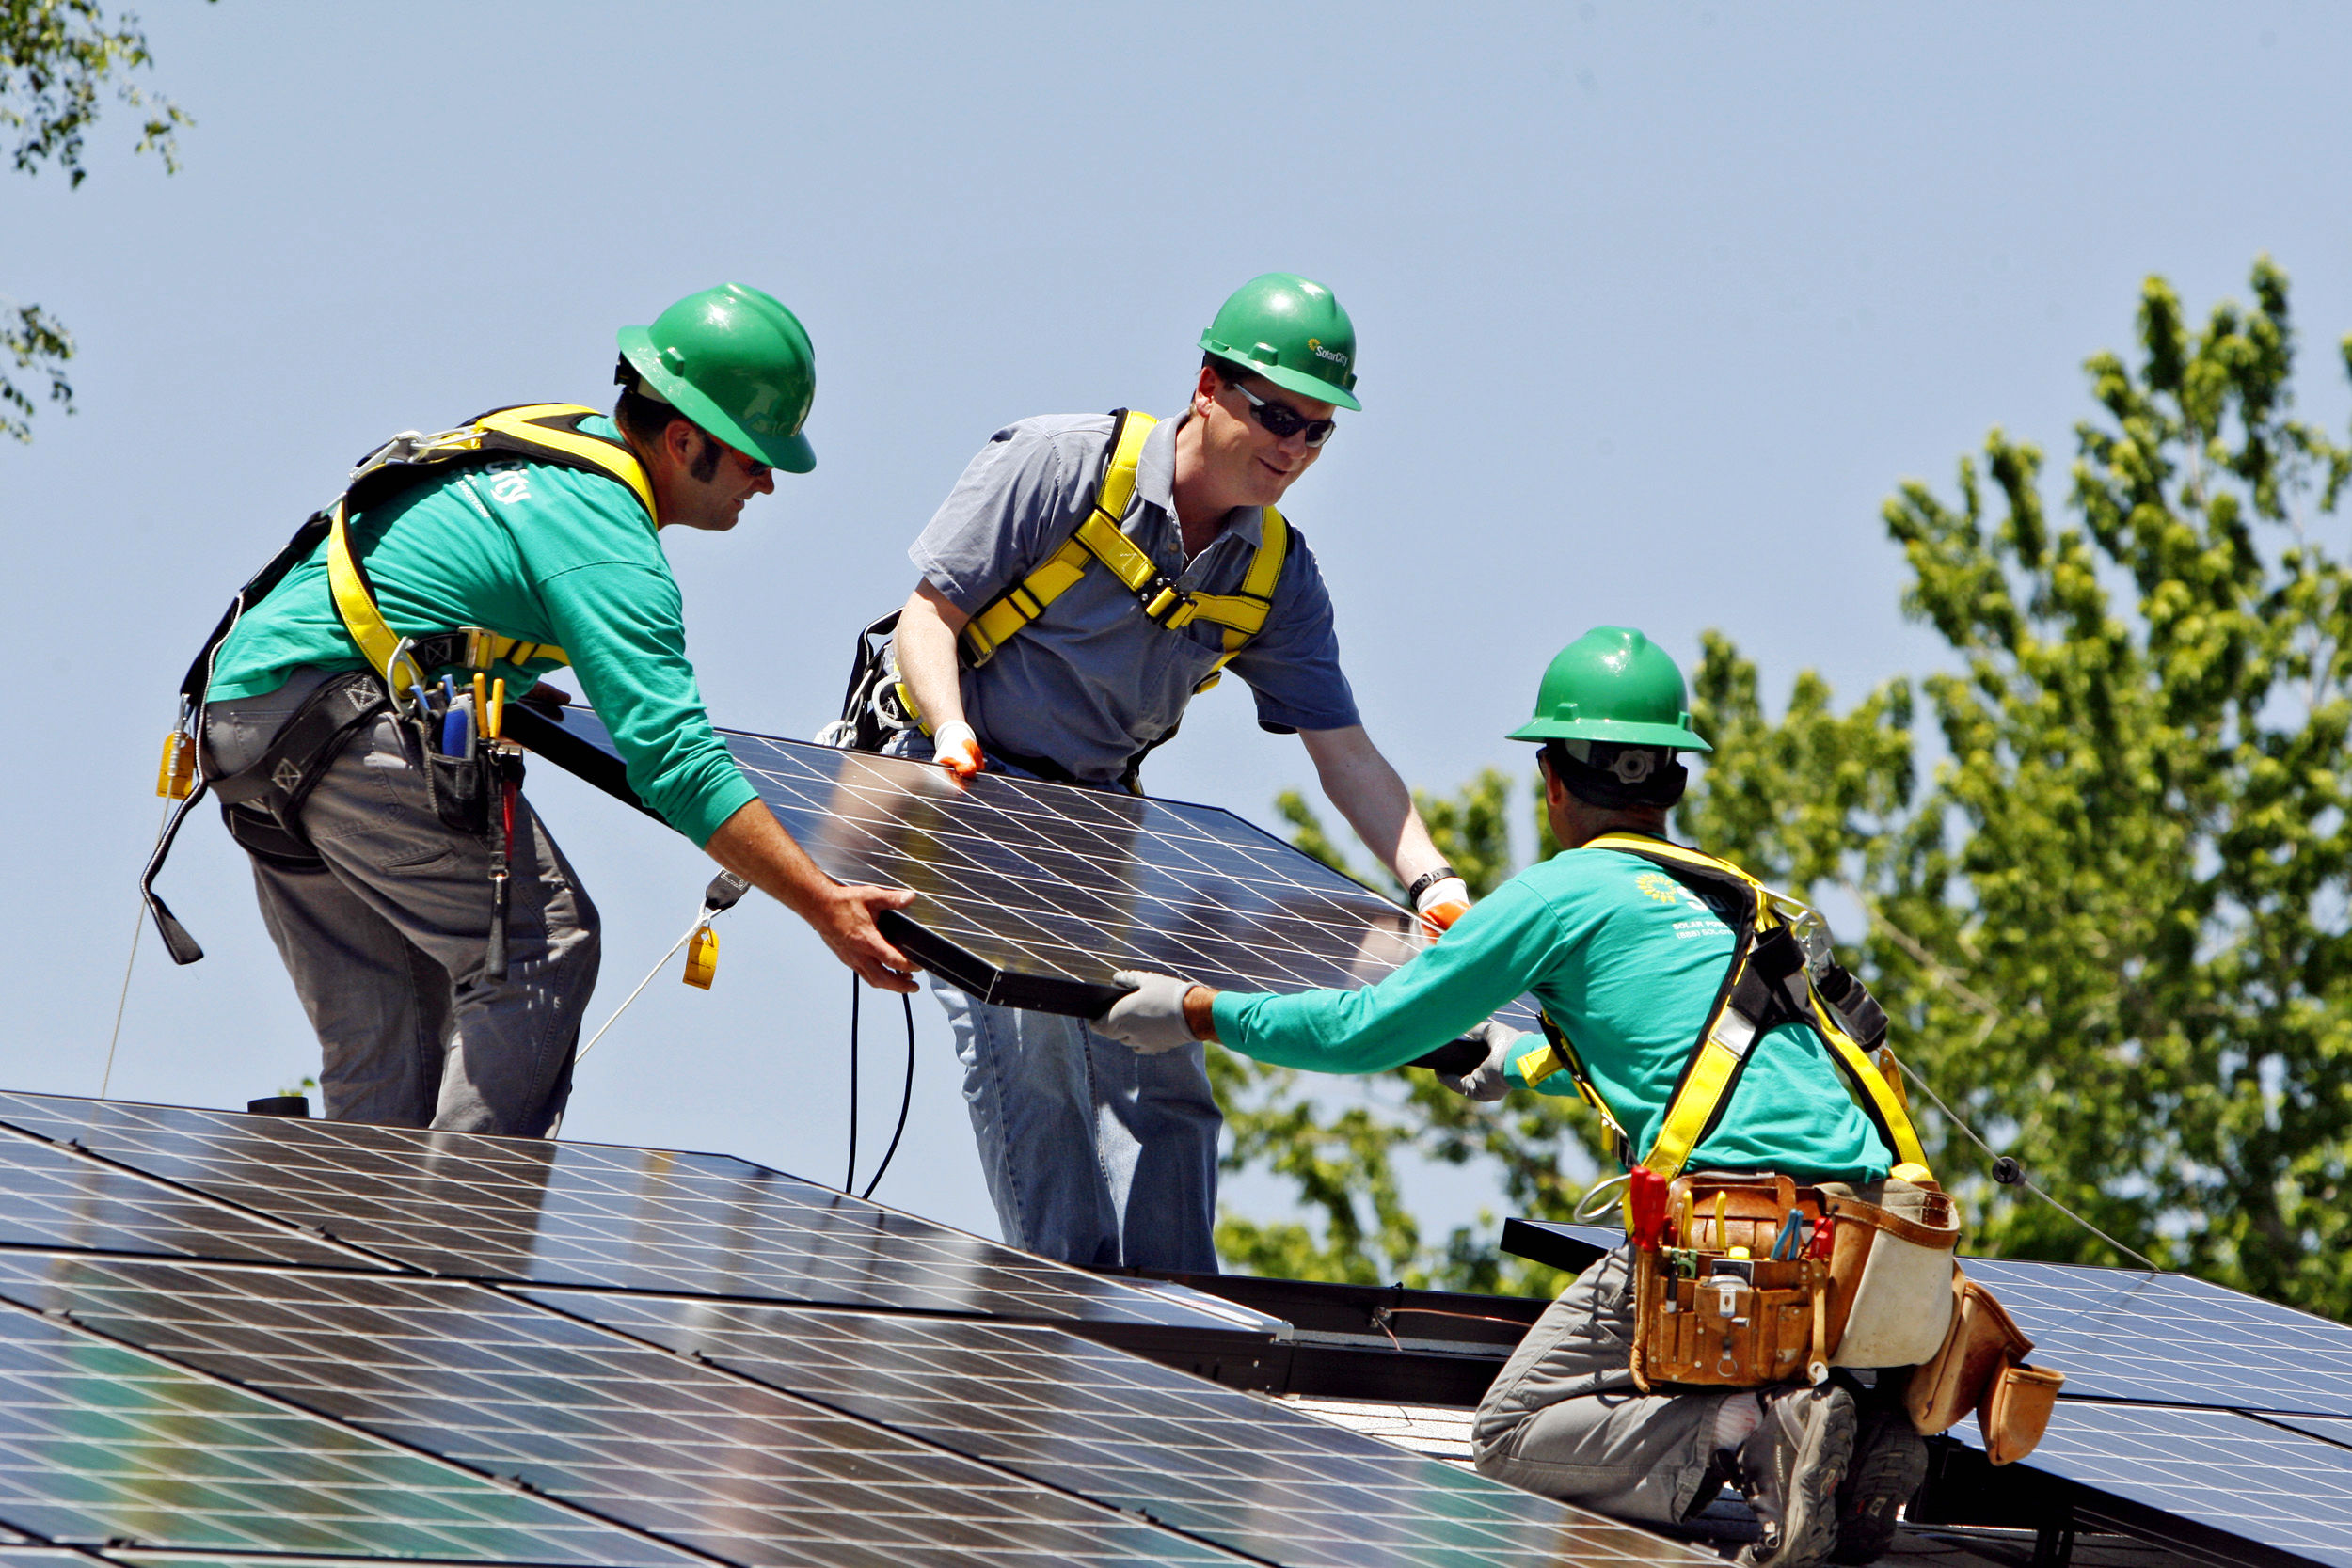 بزرگ‌ترین پشت بام خورشیدی دنیا در لاس وگاس ساخته می شود